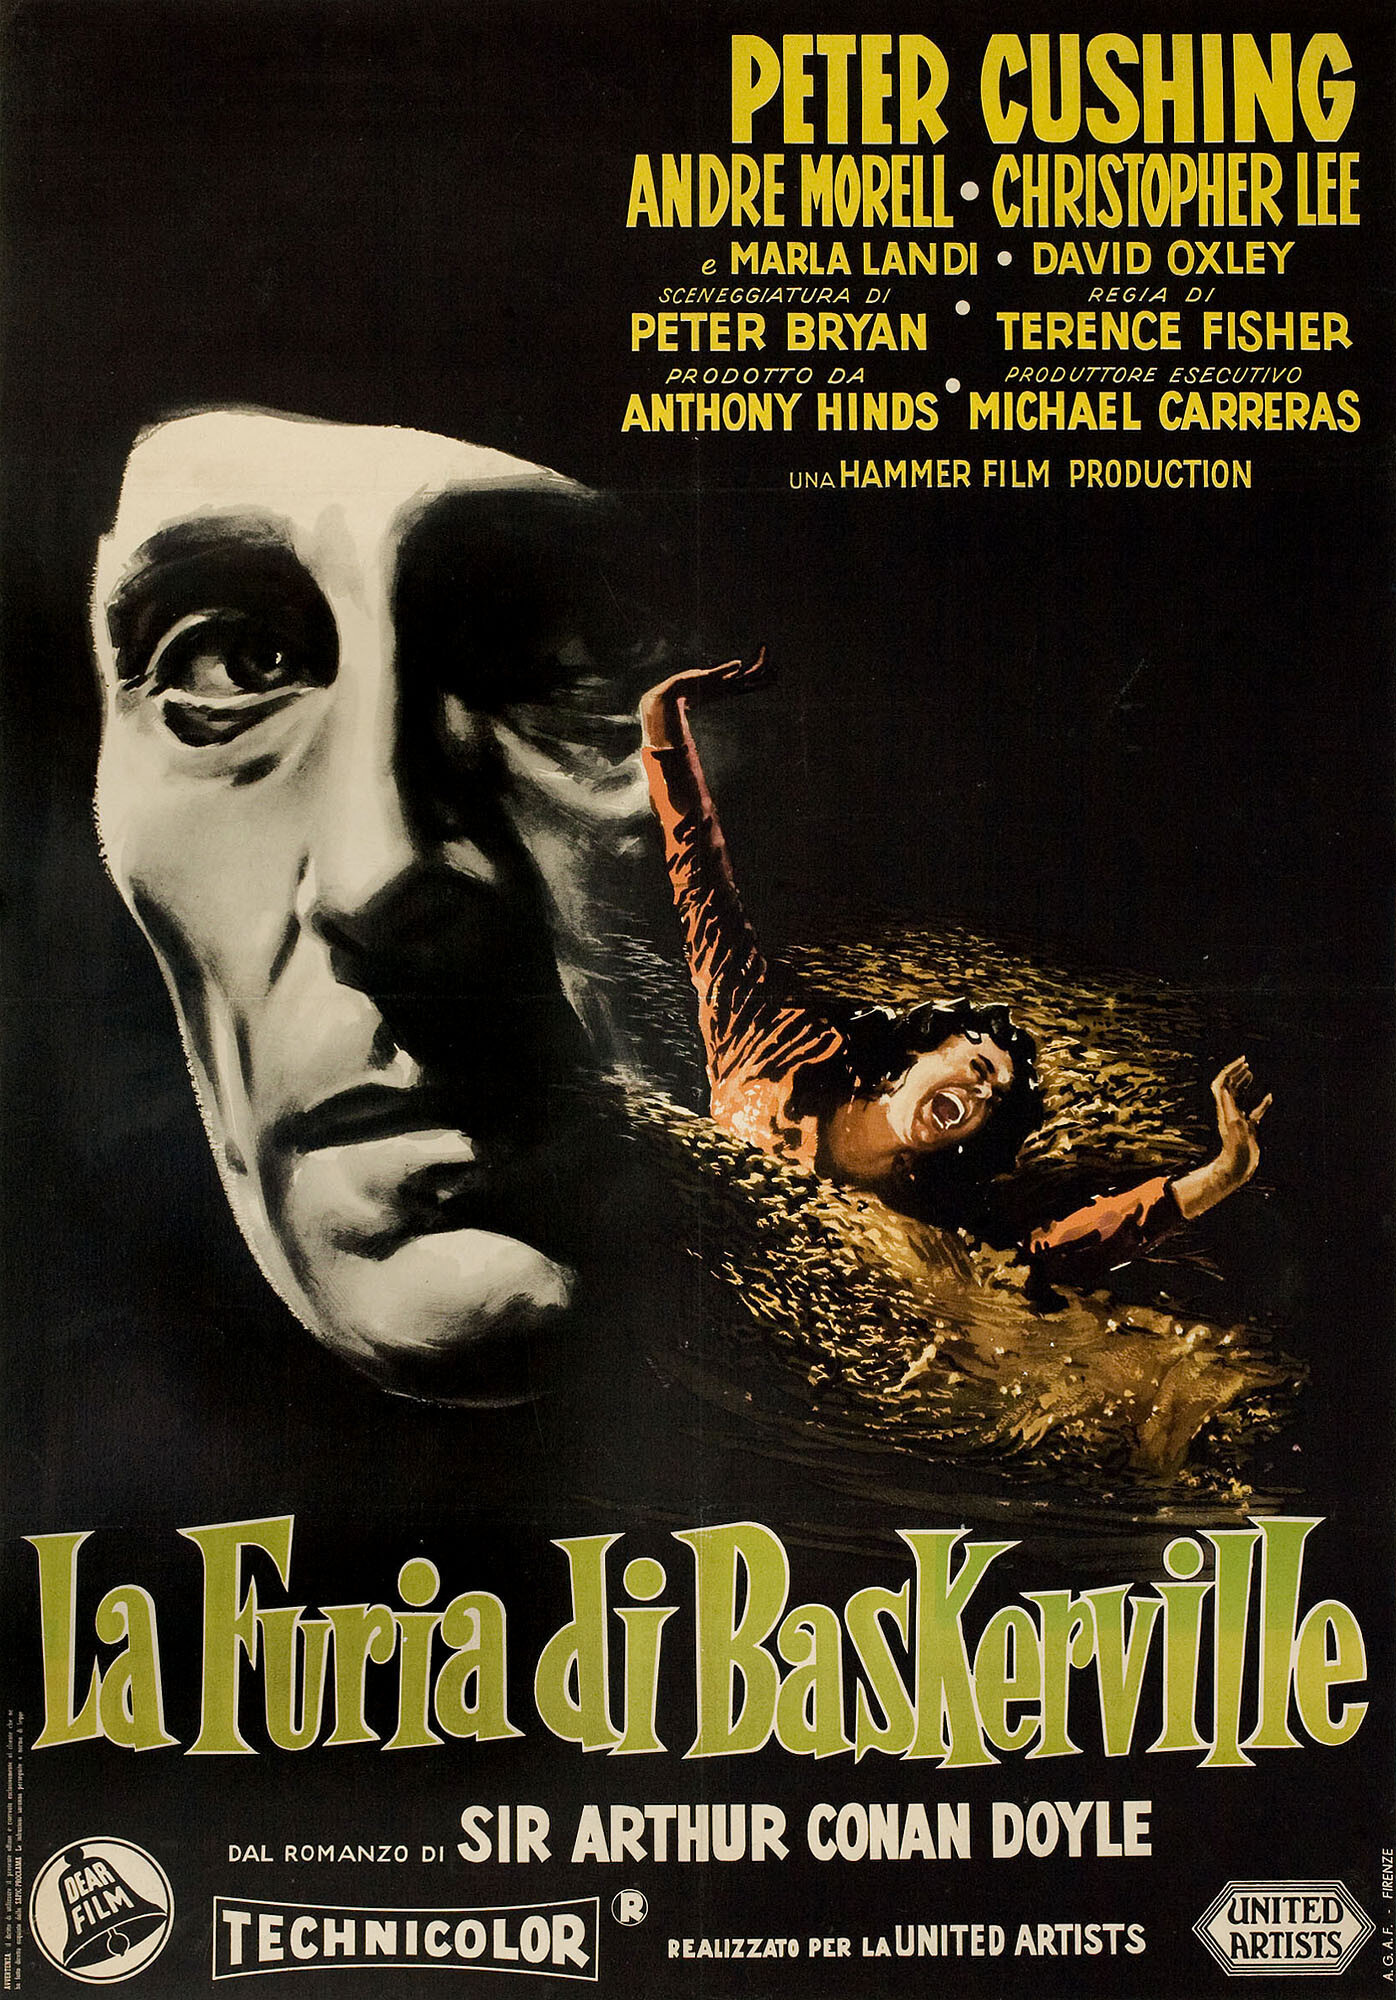 Собака Баскервилей (The Hound of the Baskervilles, 1959), режиссёр Теренс Фишер, итальянский постер к фильму (Hummer horror, 1959 год)